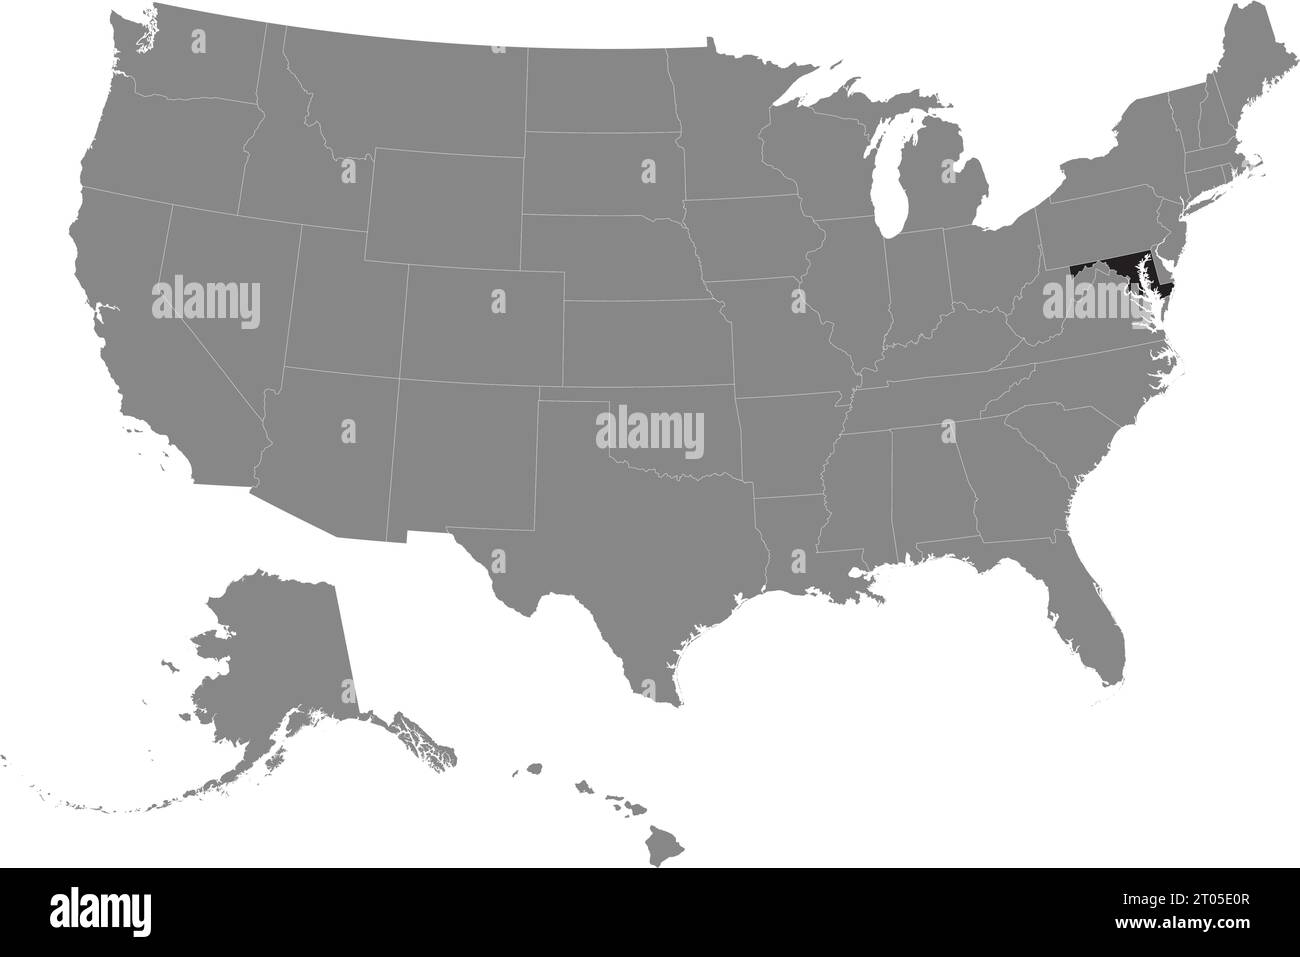 Schwarze CMYK-Bundeskarte von MARYLAND in detaillierter grauer, leerer politischer Karte der Vereinigten Staaten von Amerika auf transparentem Hintergrund Stock Vektor